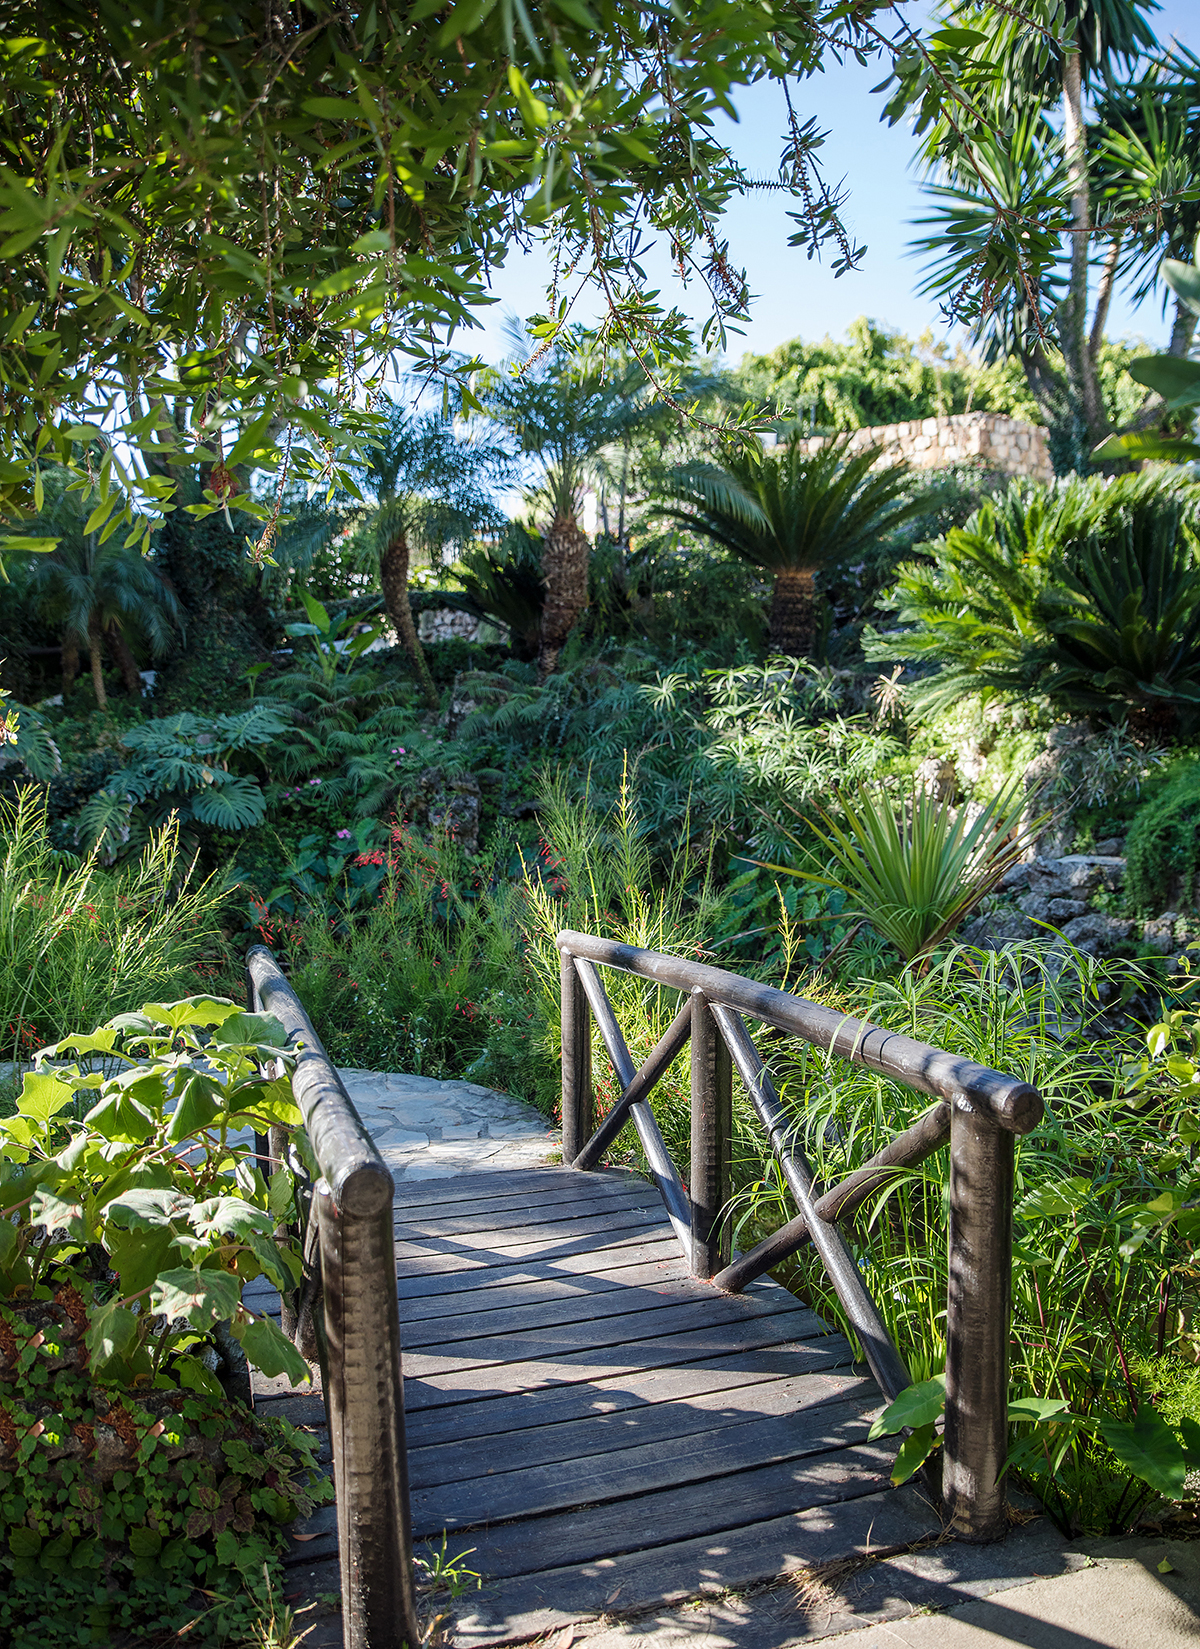 Gardens at Puente Romano Marbella